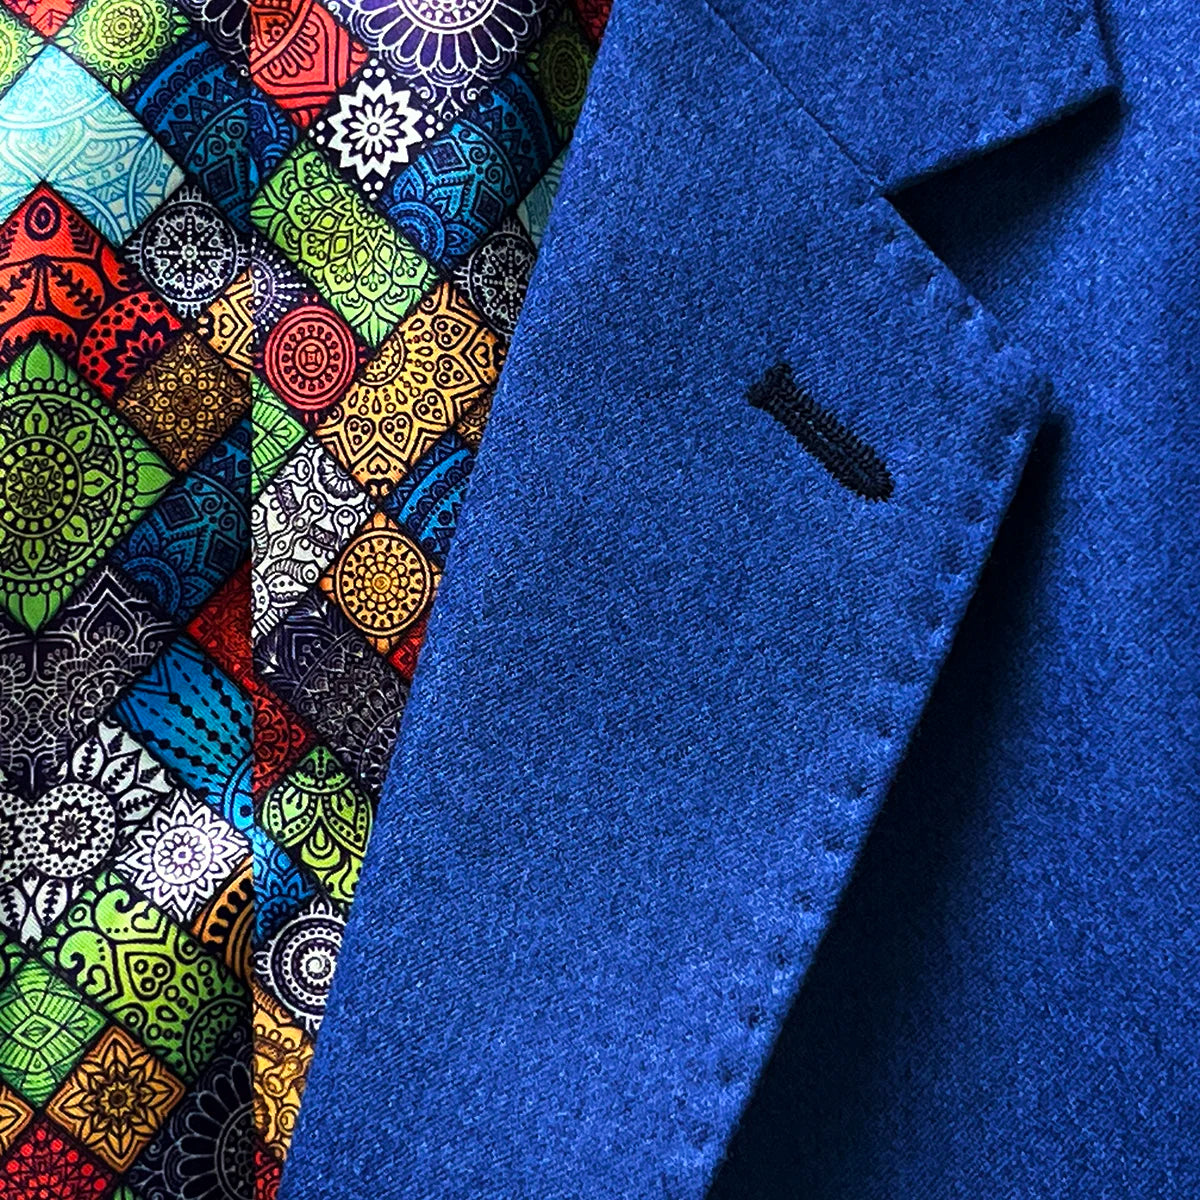 Notch lapel design on a light blue flannel suit for men.